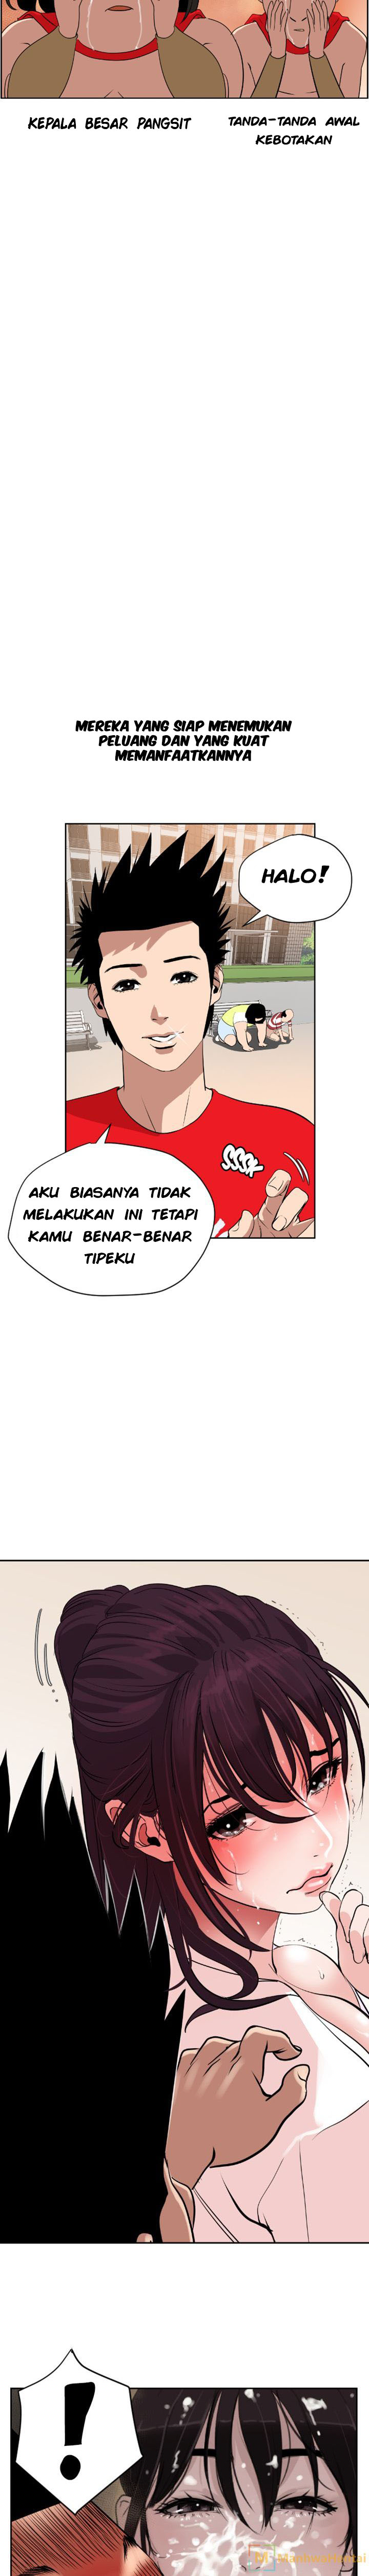 Lightning Rod Chapter 7 Bahasa Indonesia - Mangakid.club